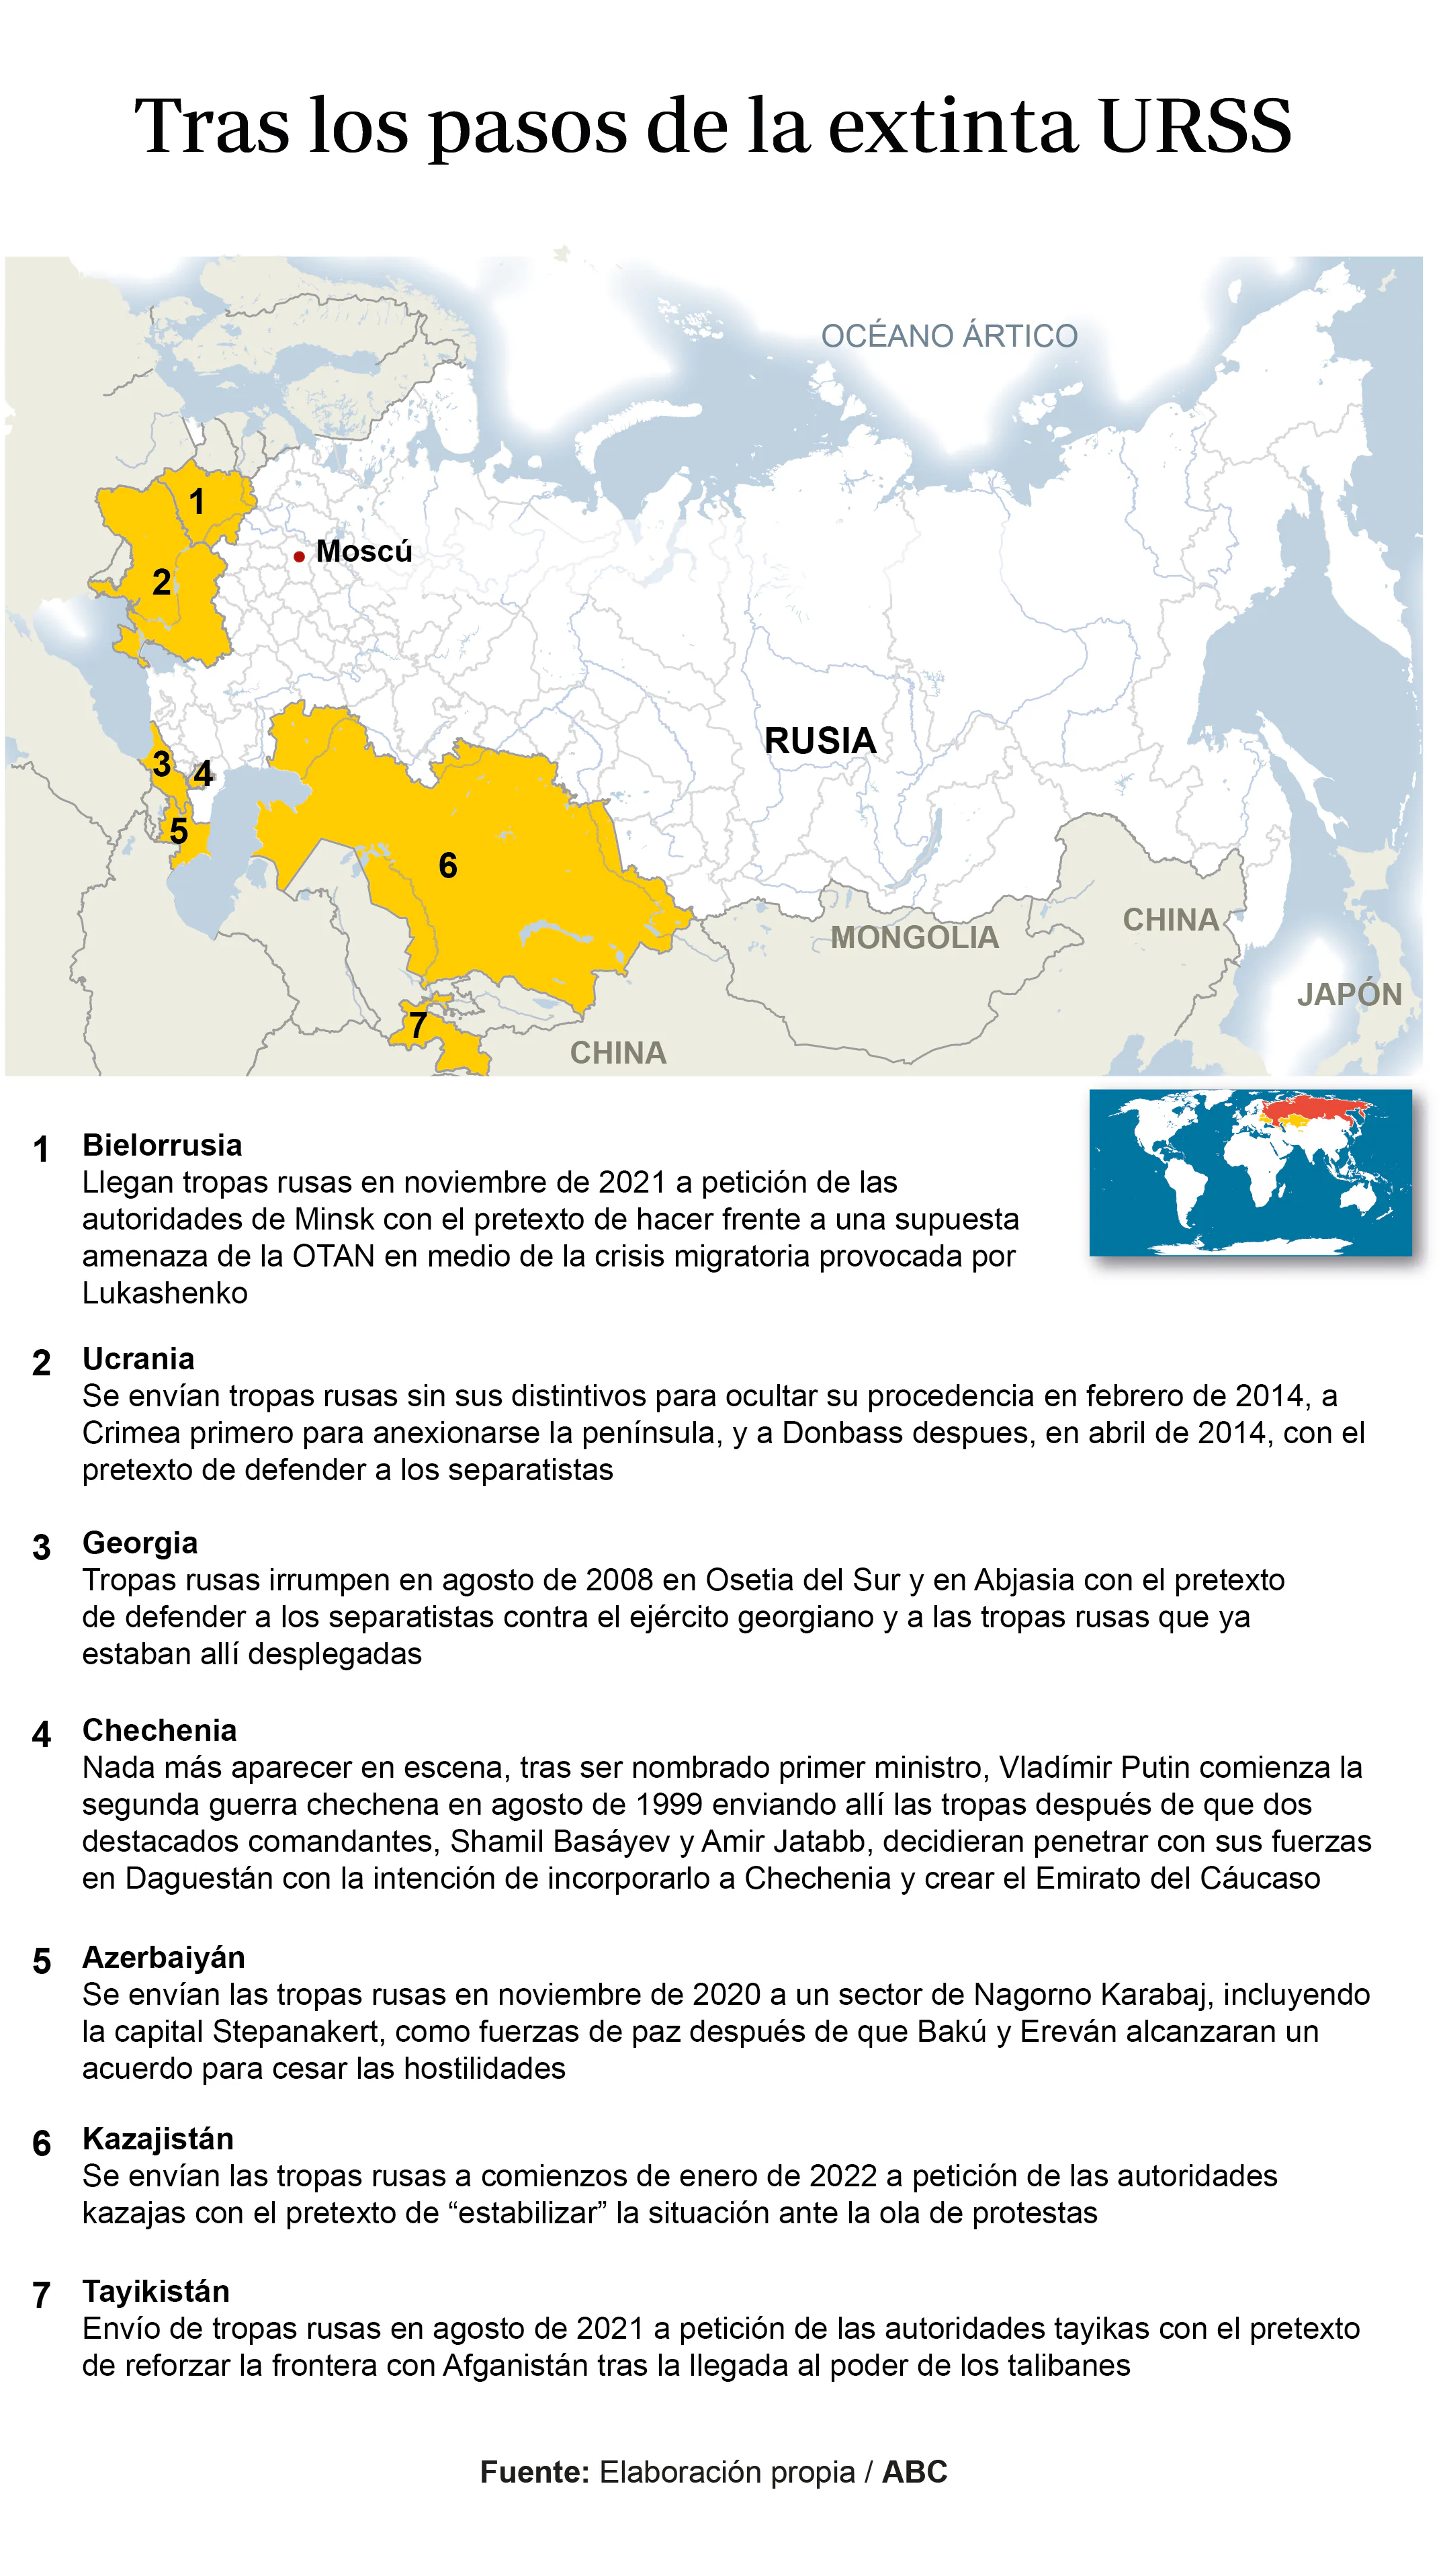 Las guerras de Putin: de Chechenia a Kazajistán, Rusia revive las viejas  glorias imperiales